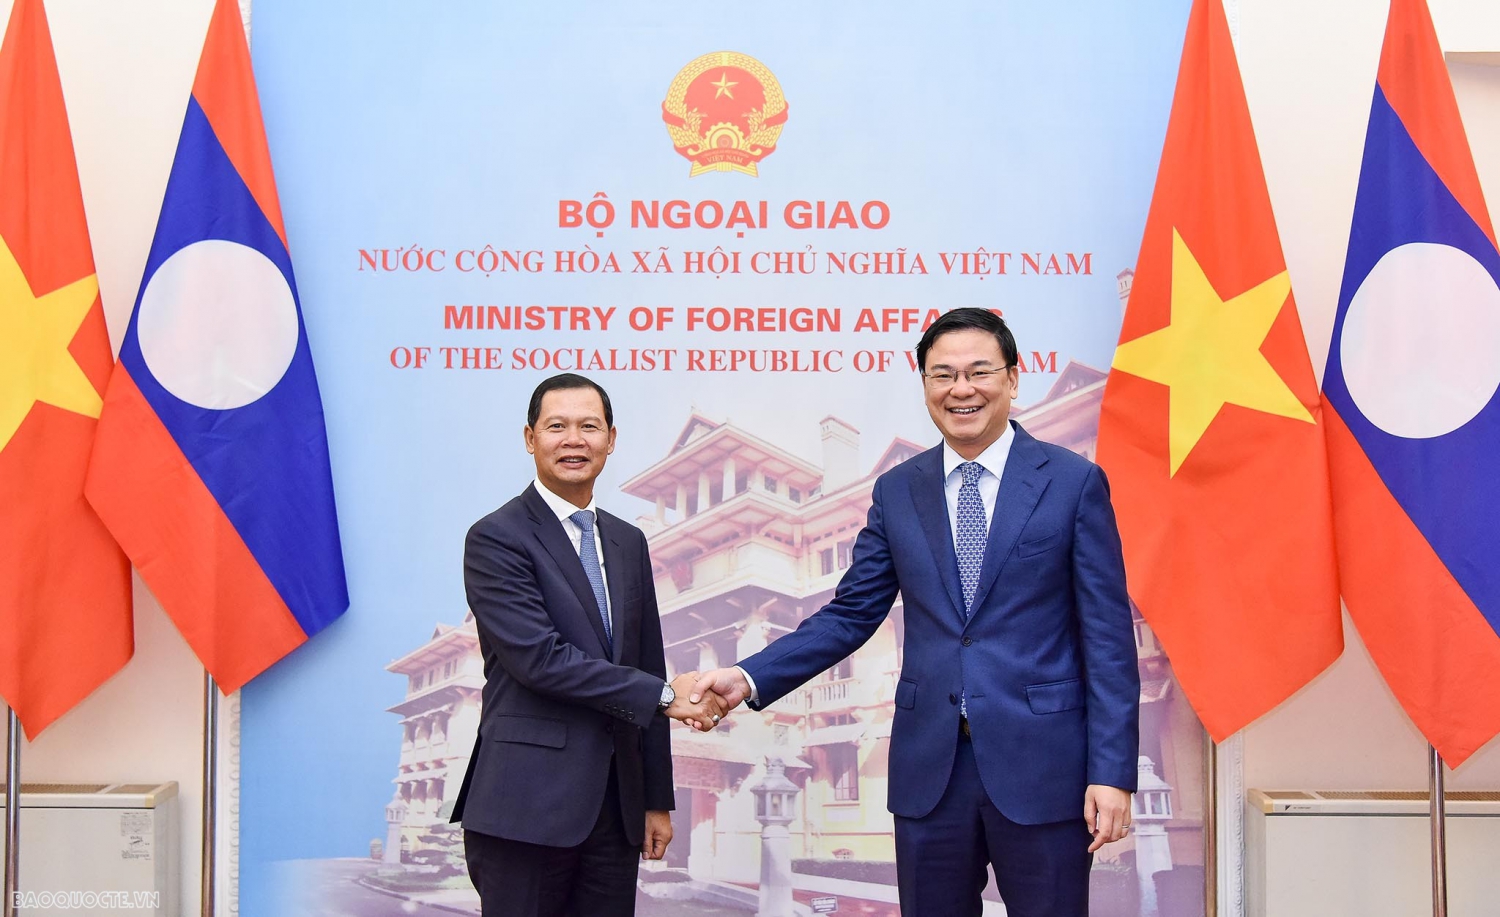 Việt Nam-Lào: Nhất trí cao về định hướng và biện pháp phát huy vai trò của hai Bộ Ngoại giao